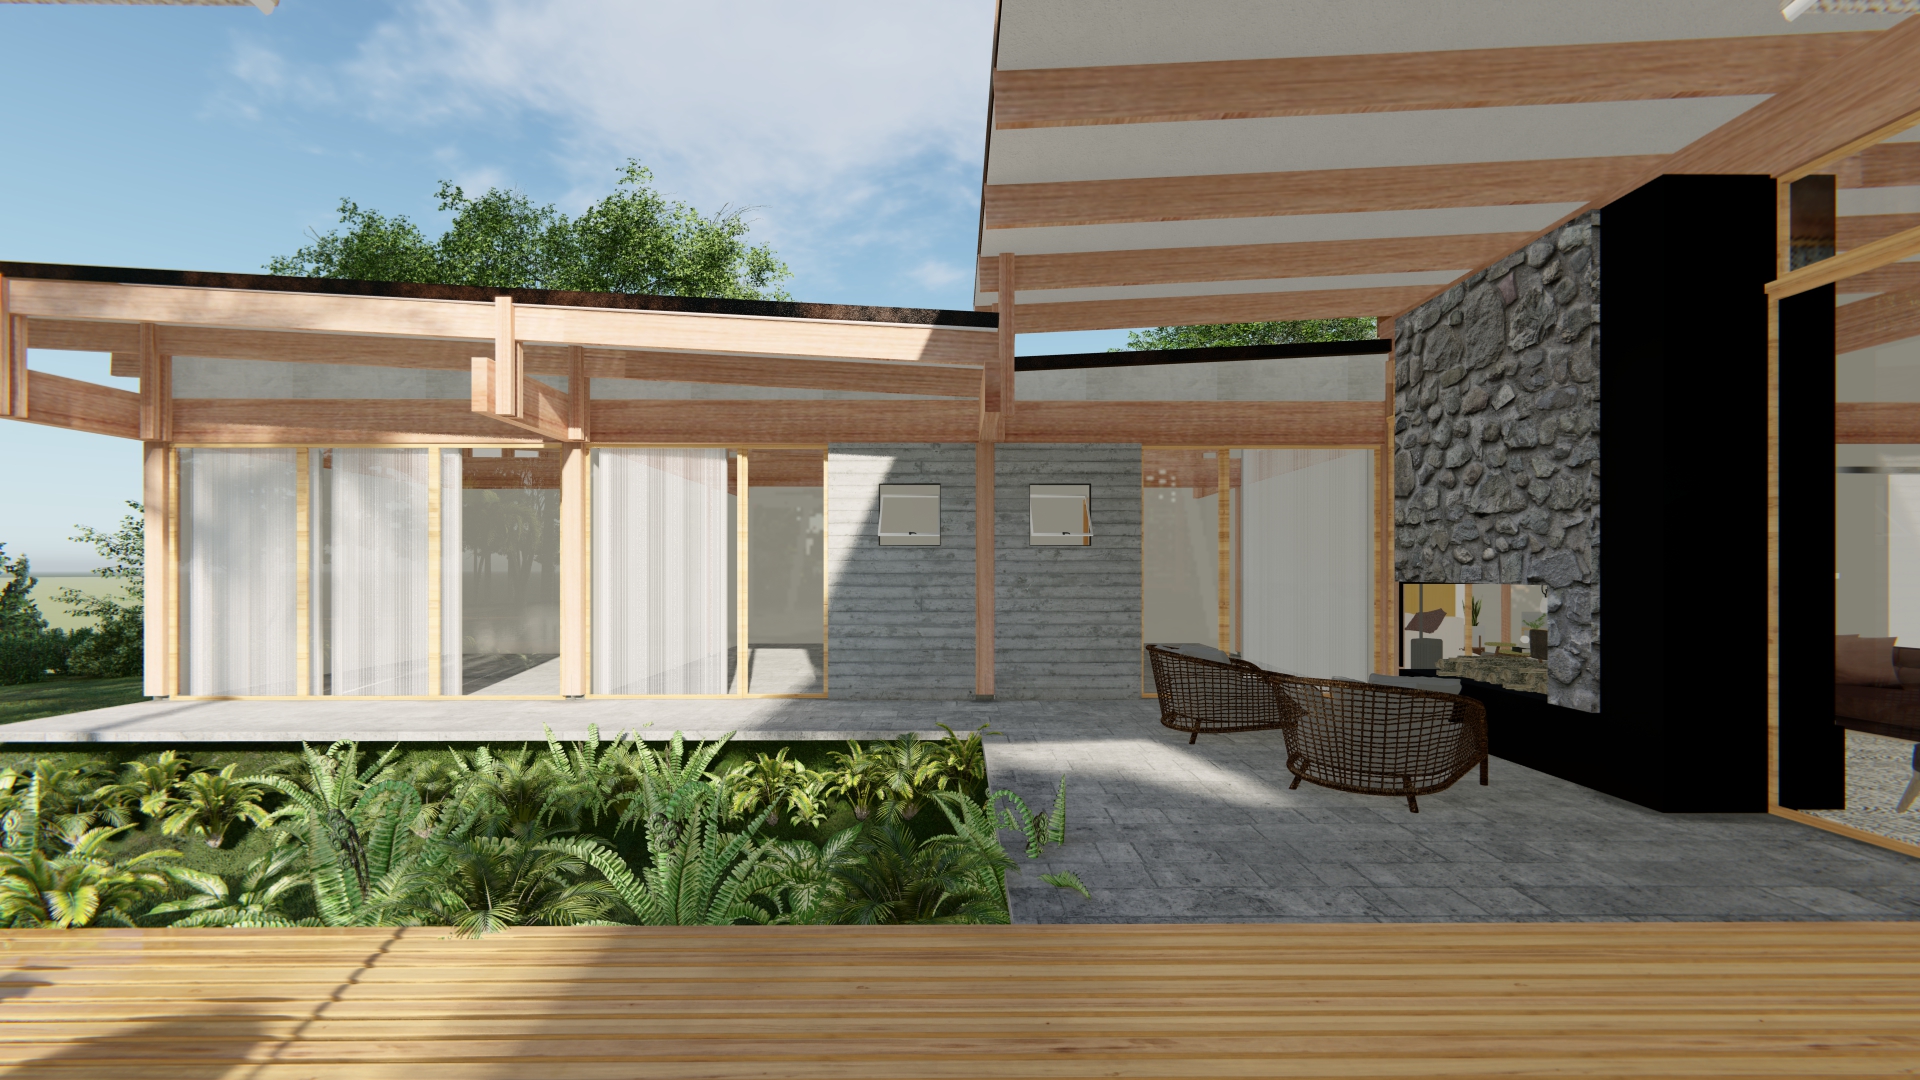 Casa Simples de Quartzo e Plantação, creation #10583